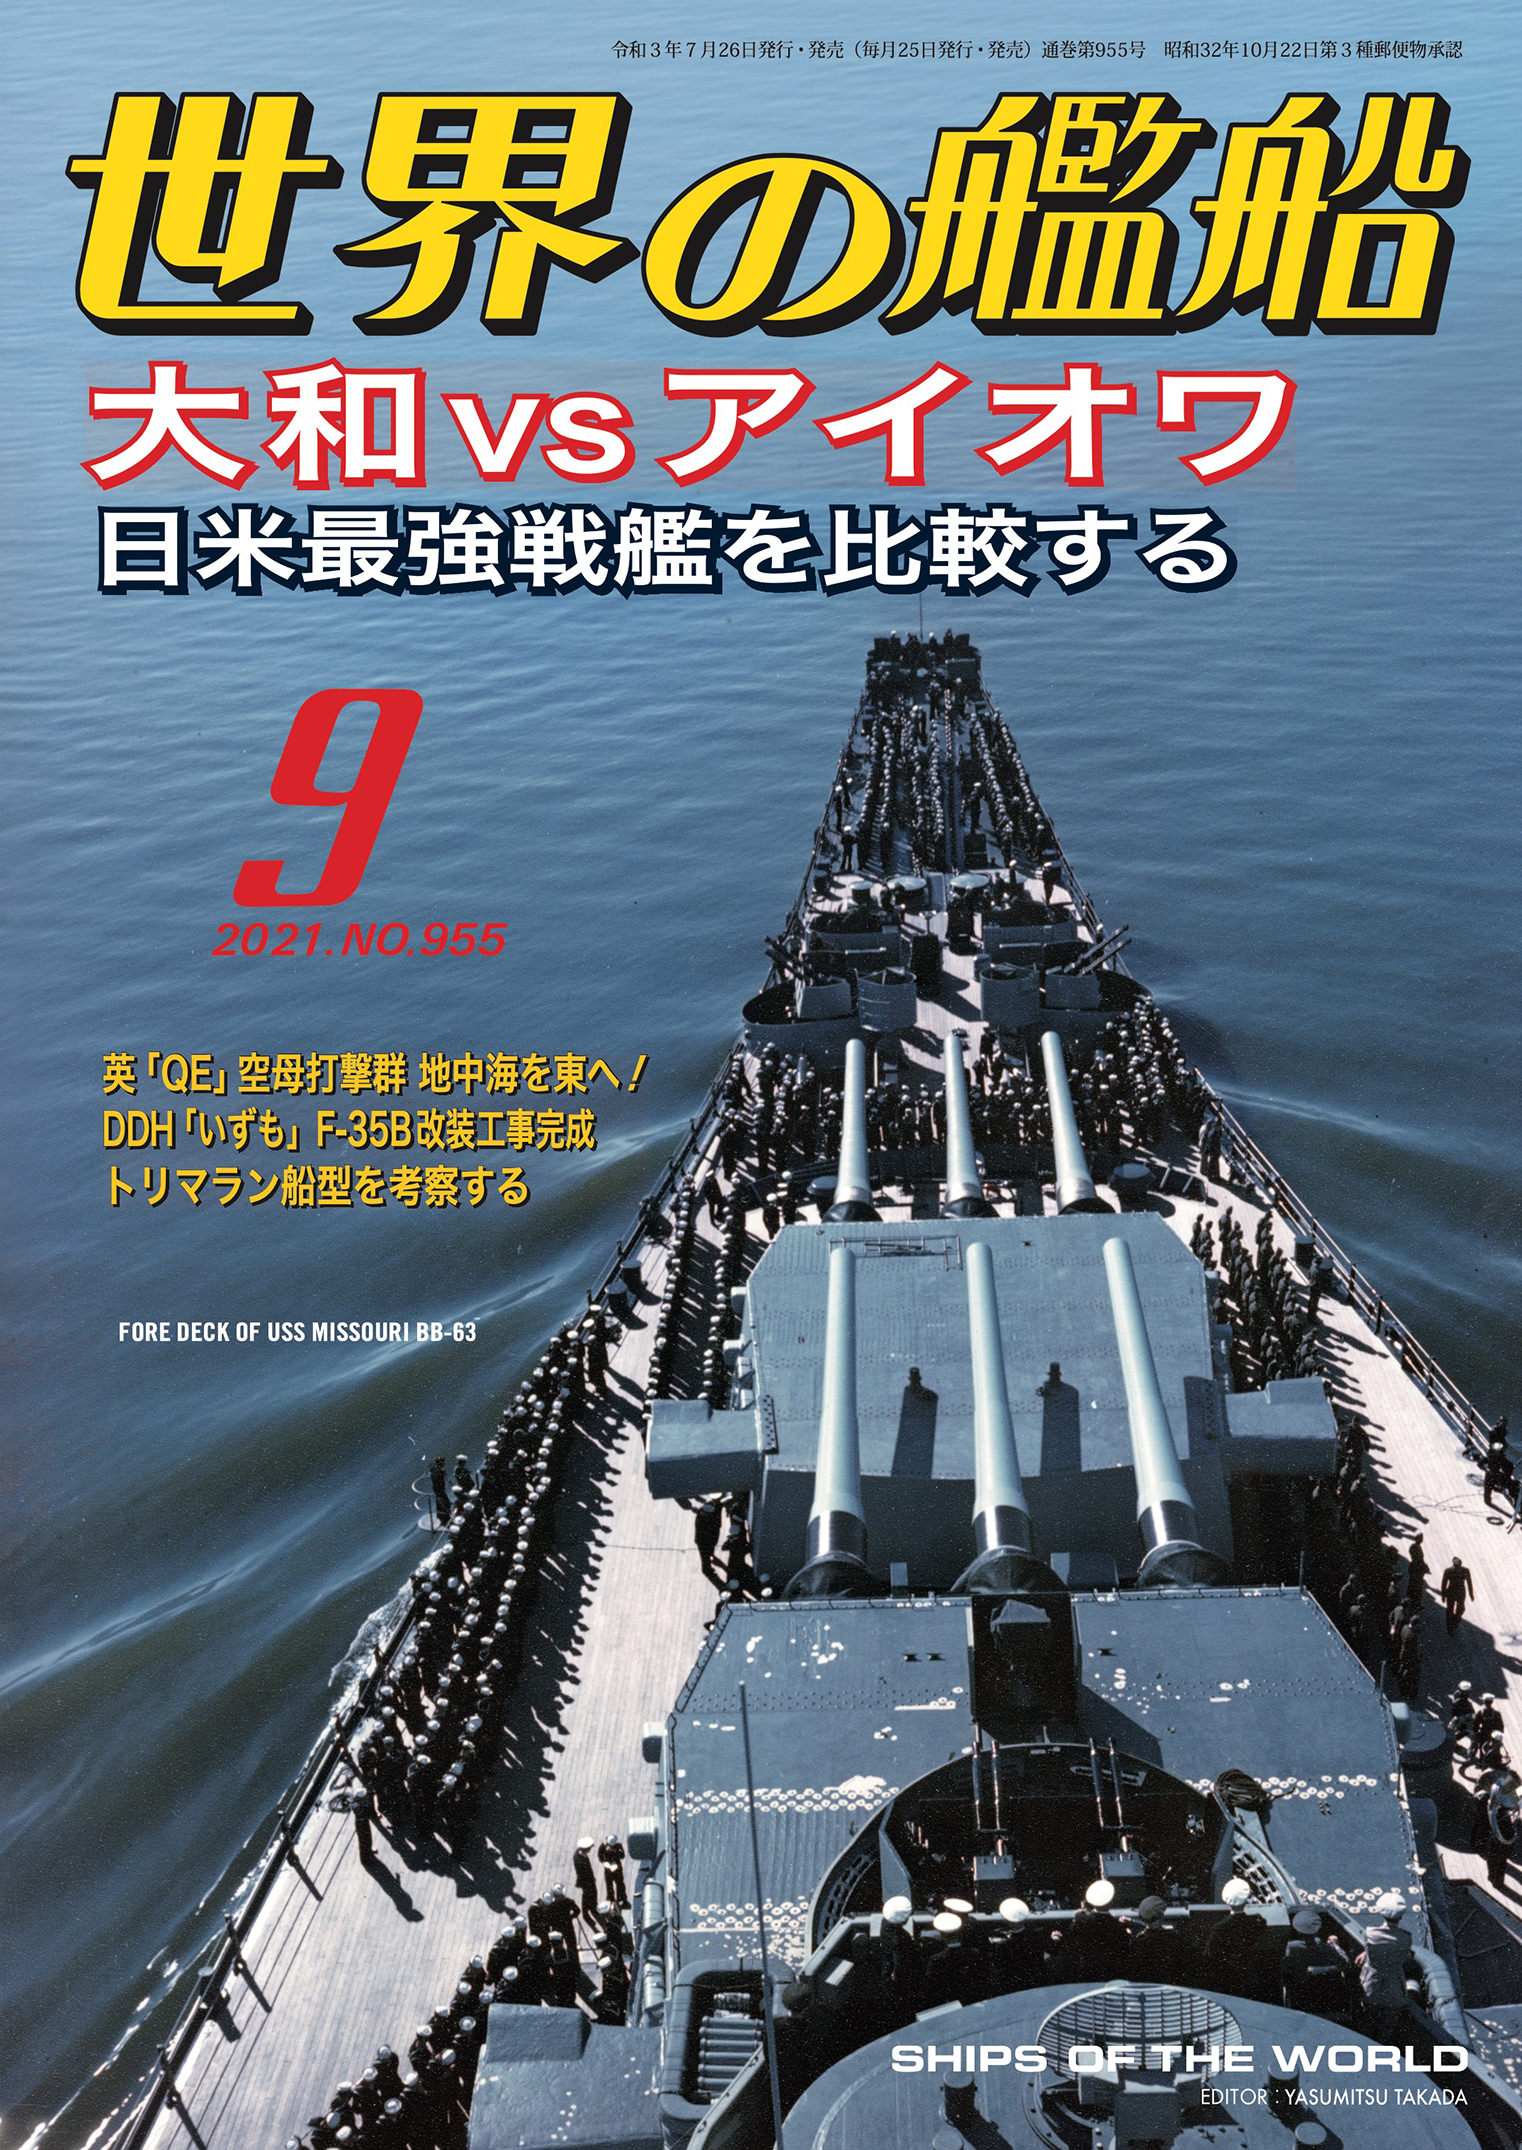 「世界の艦船」1995年4月、5月、6月号